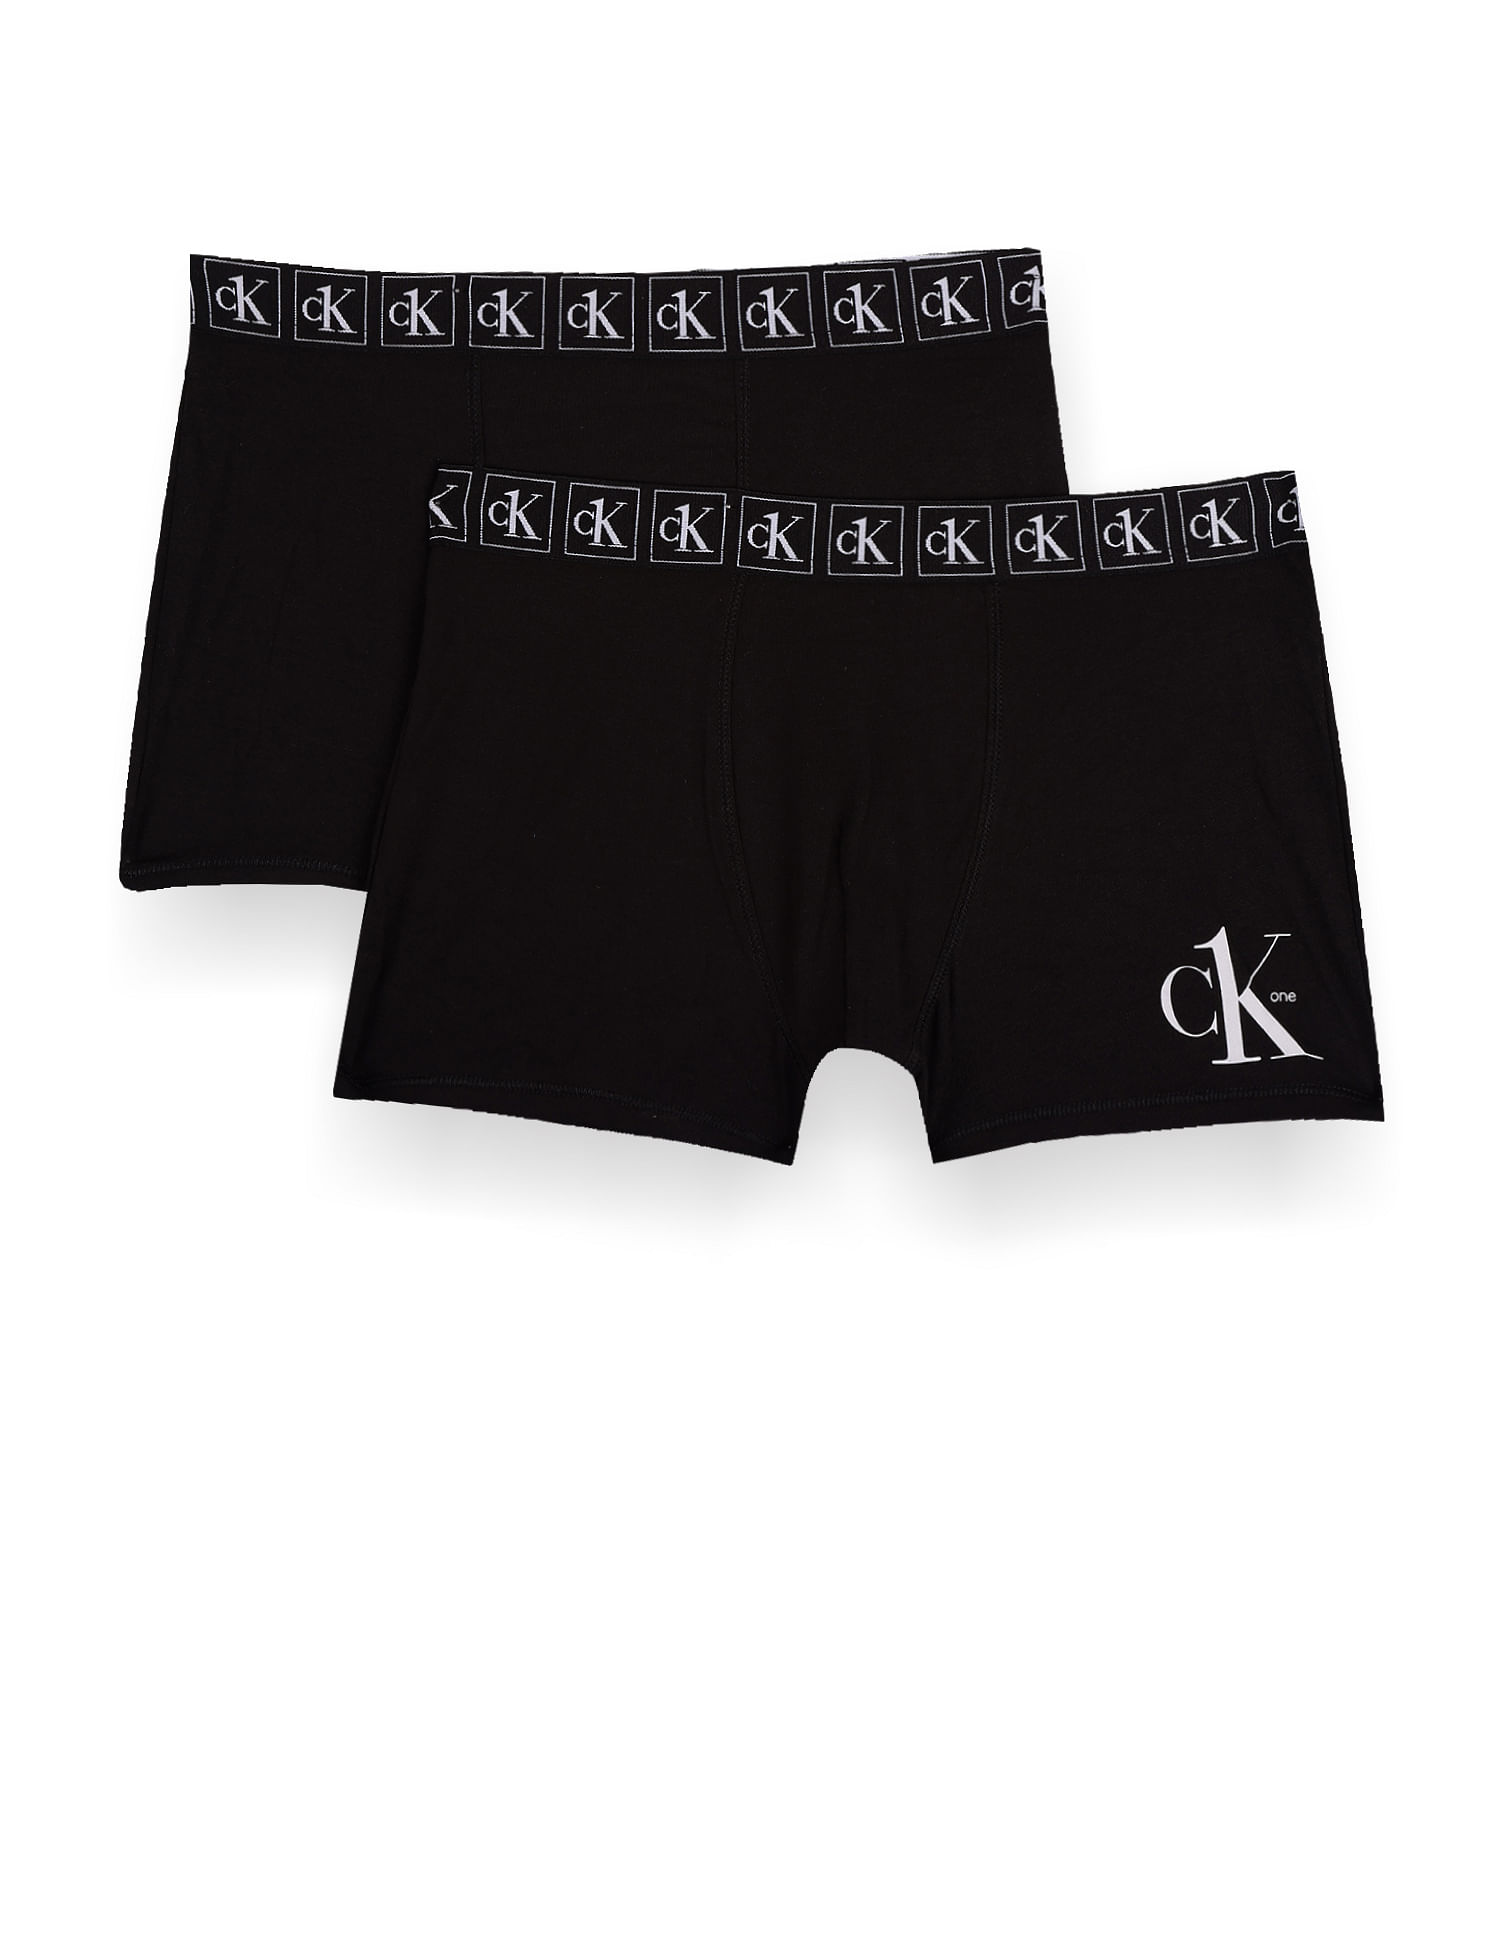 Trunks Underwear - Buy Trunks Underwear online at Best Prices in India